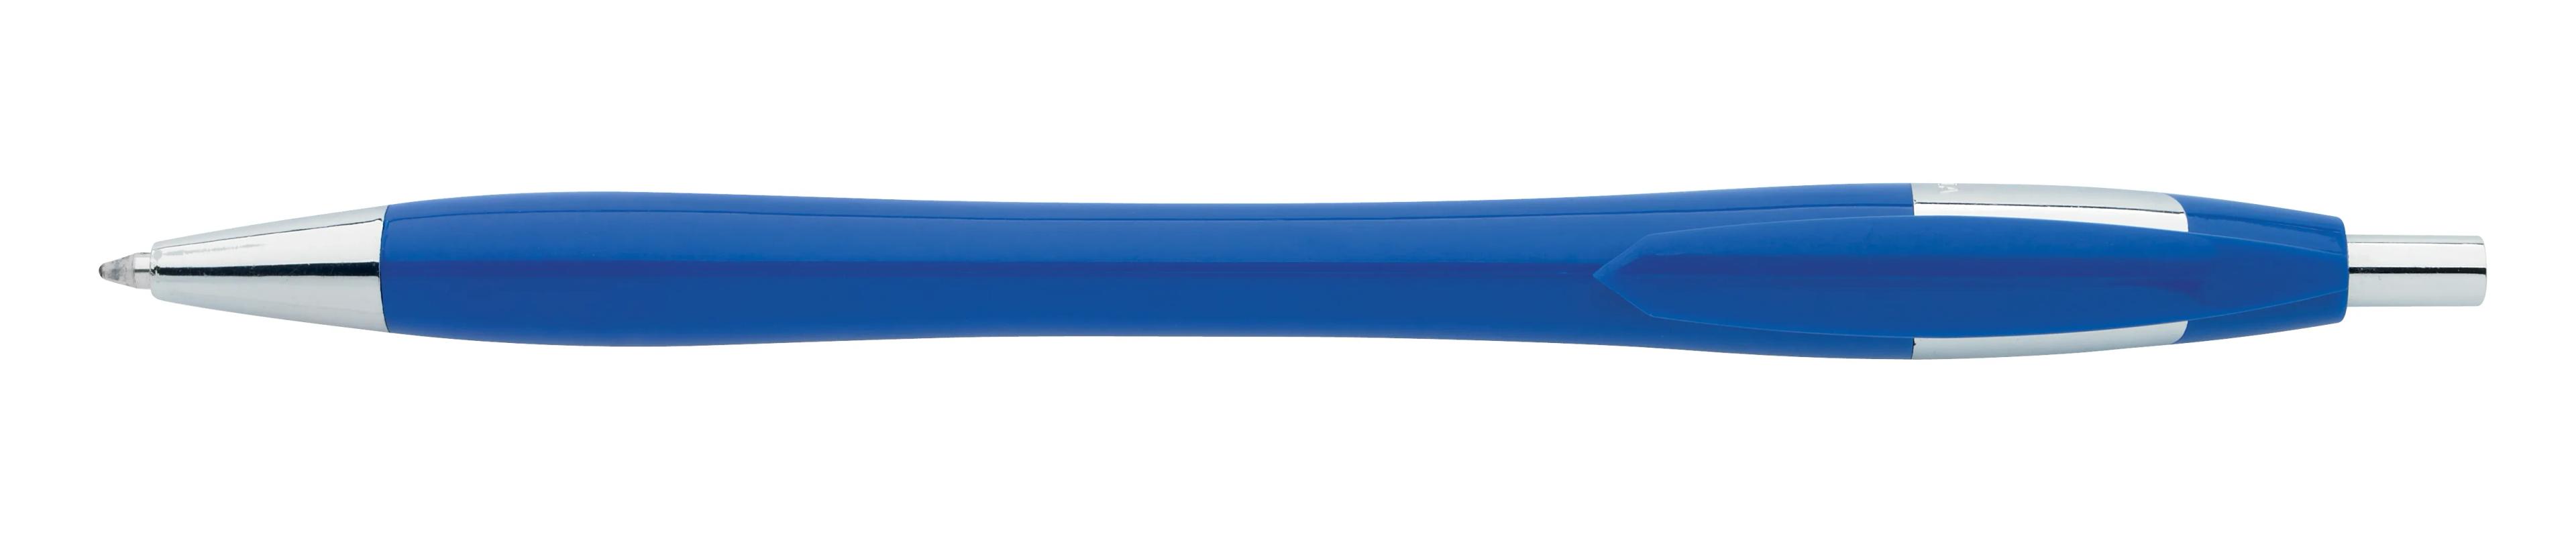 Chrome Dart Pen 5 of 32